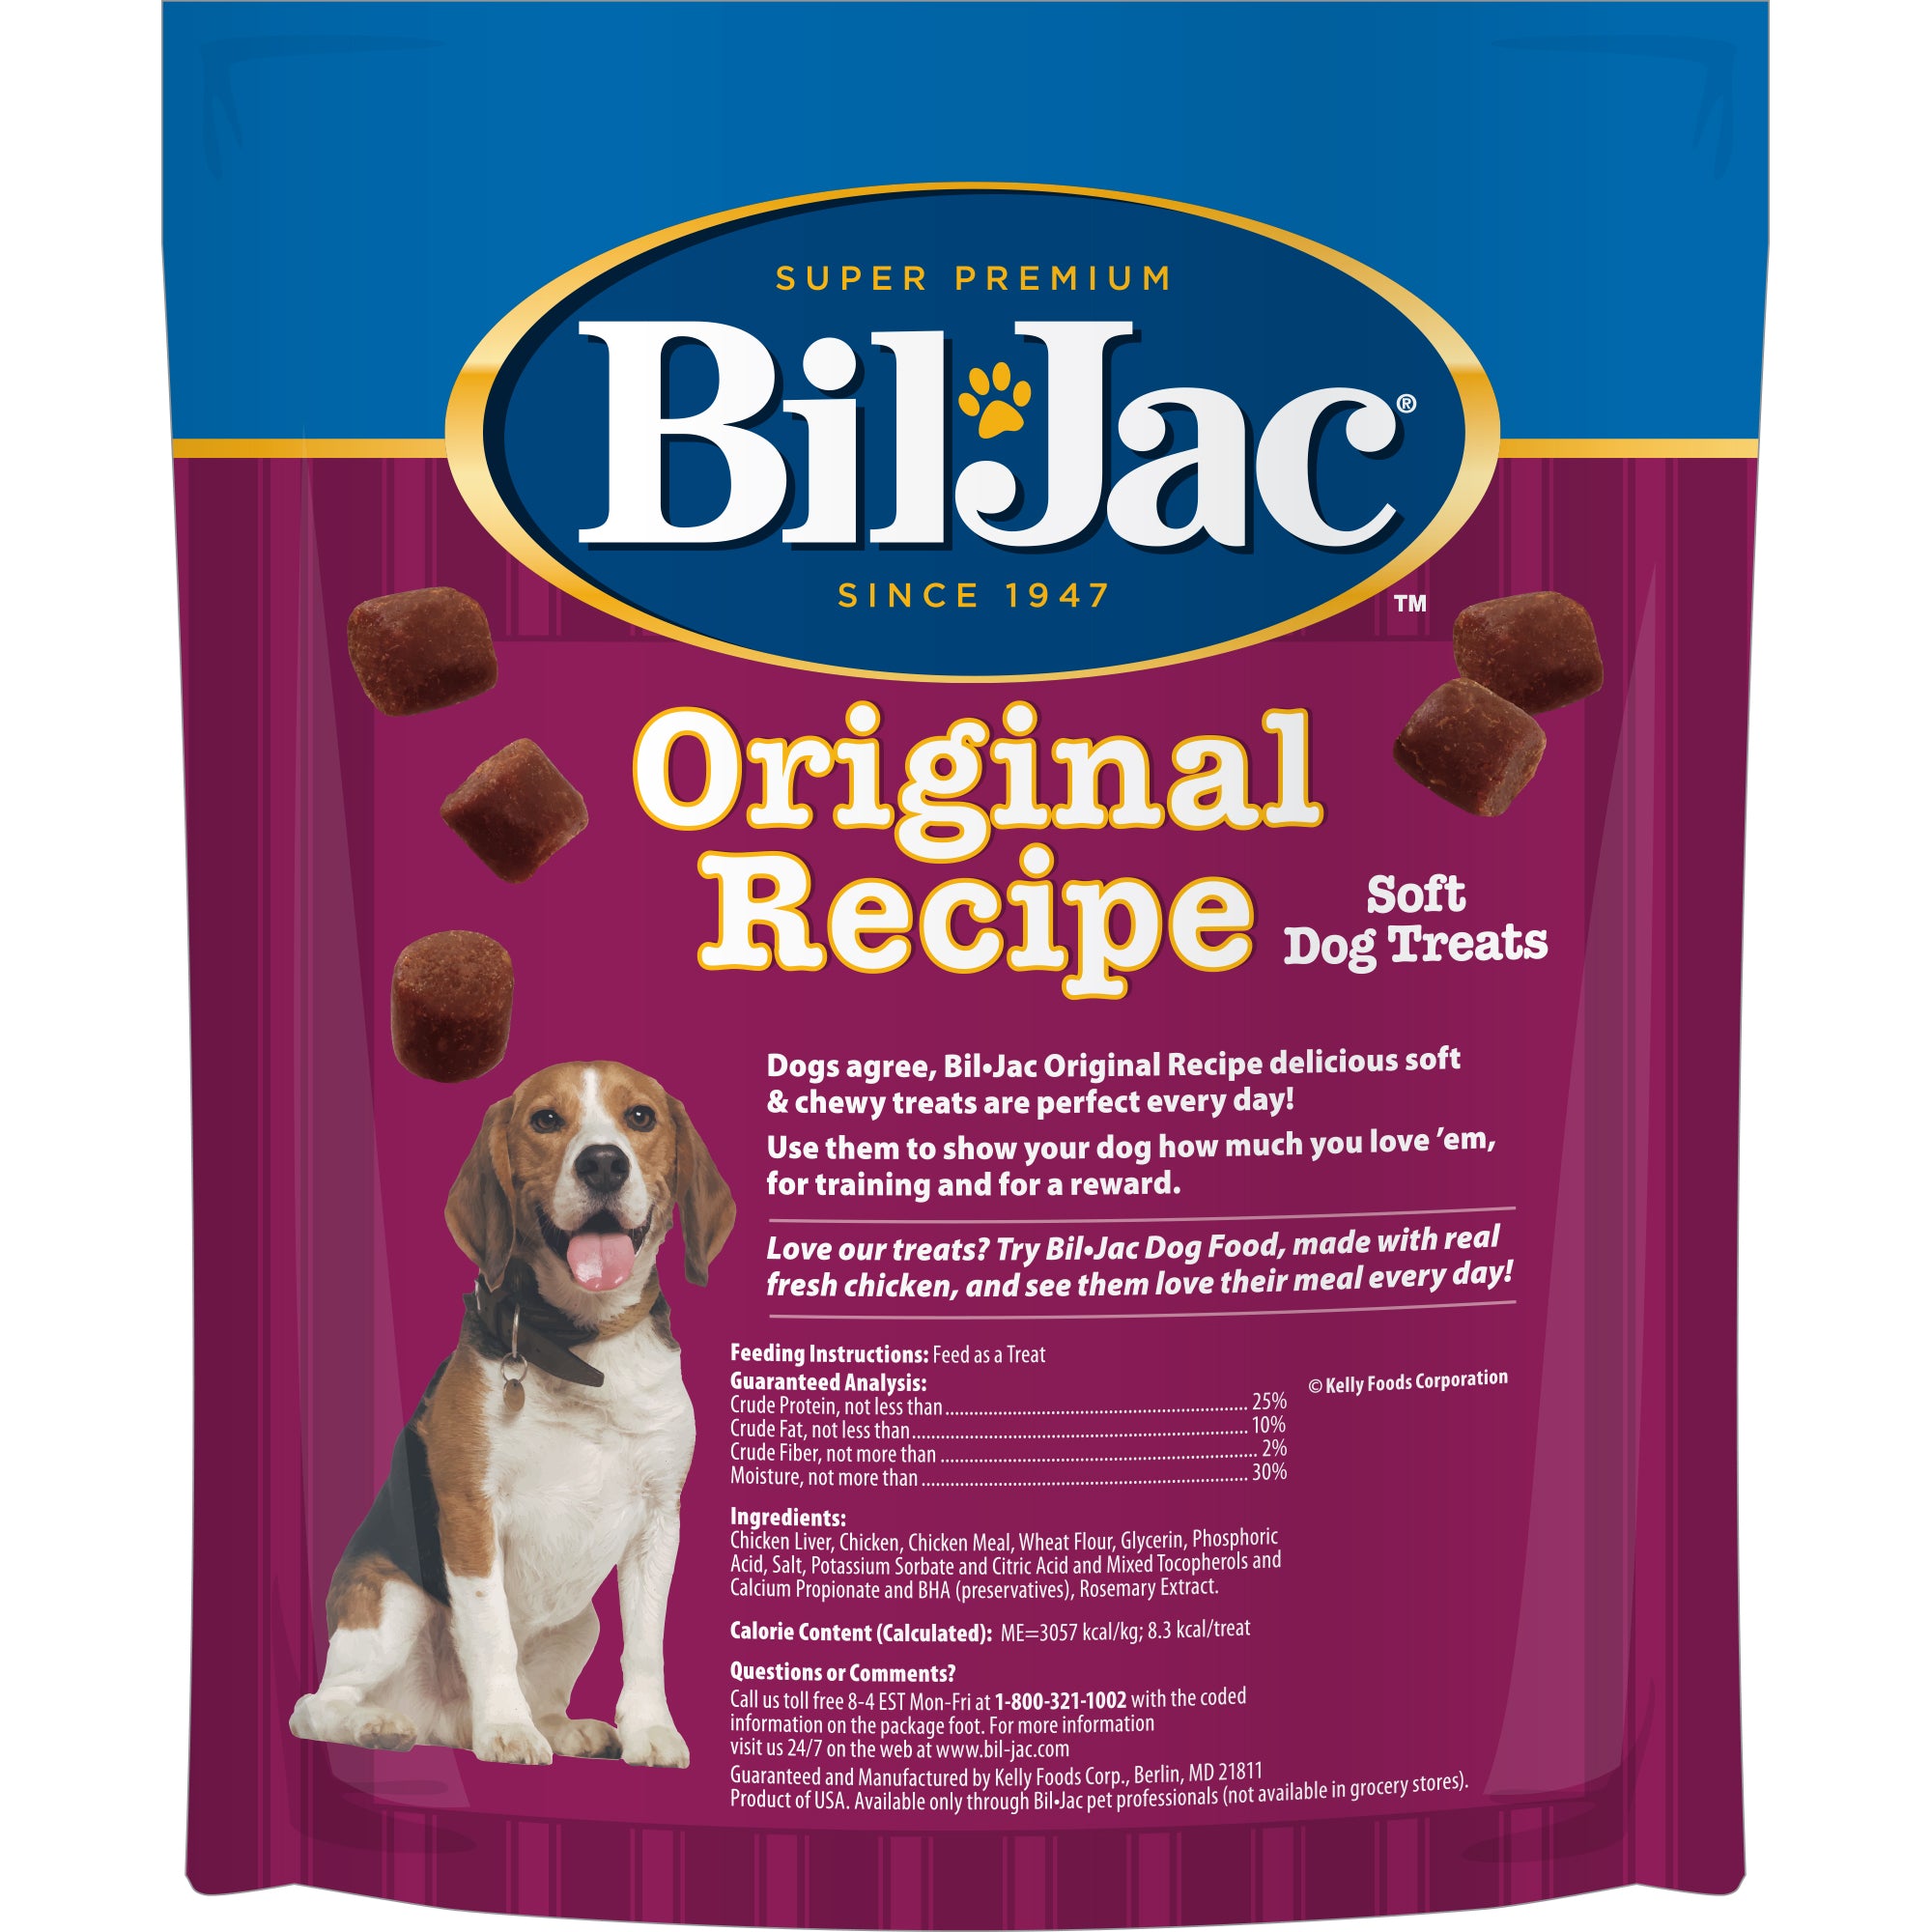 Bil-Jac Original Recipe Premios de Hígado de Pollo para Entrenamiento para Perros de Bil-Jac